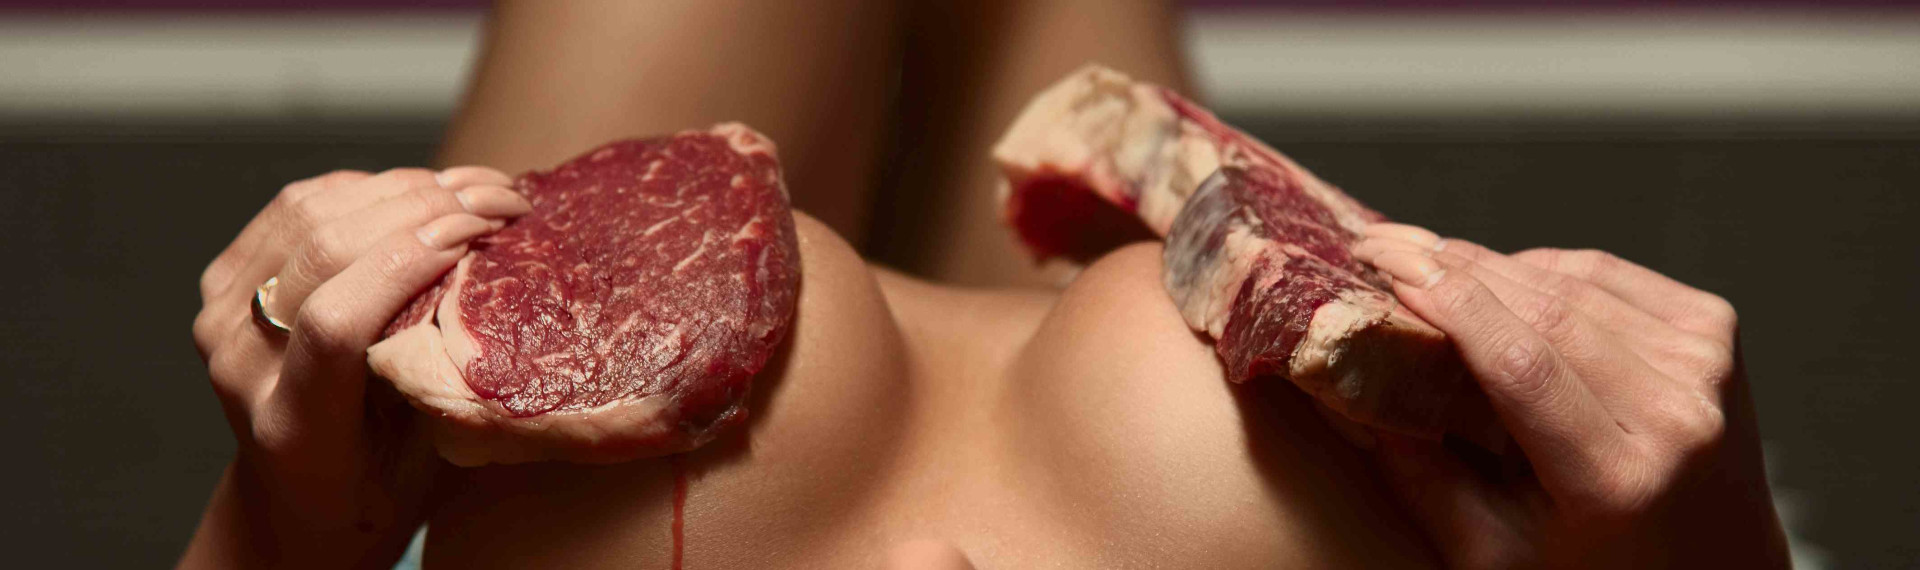 Steak und Strip Prag | Fleisch, Bier & jede Menge nackte Haut